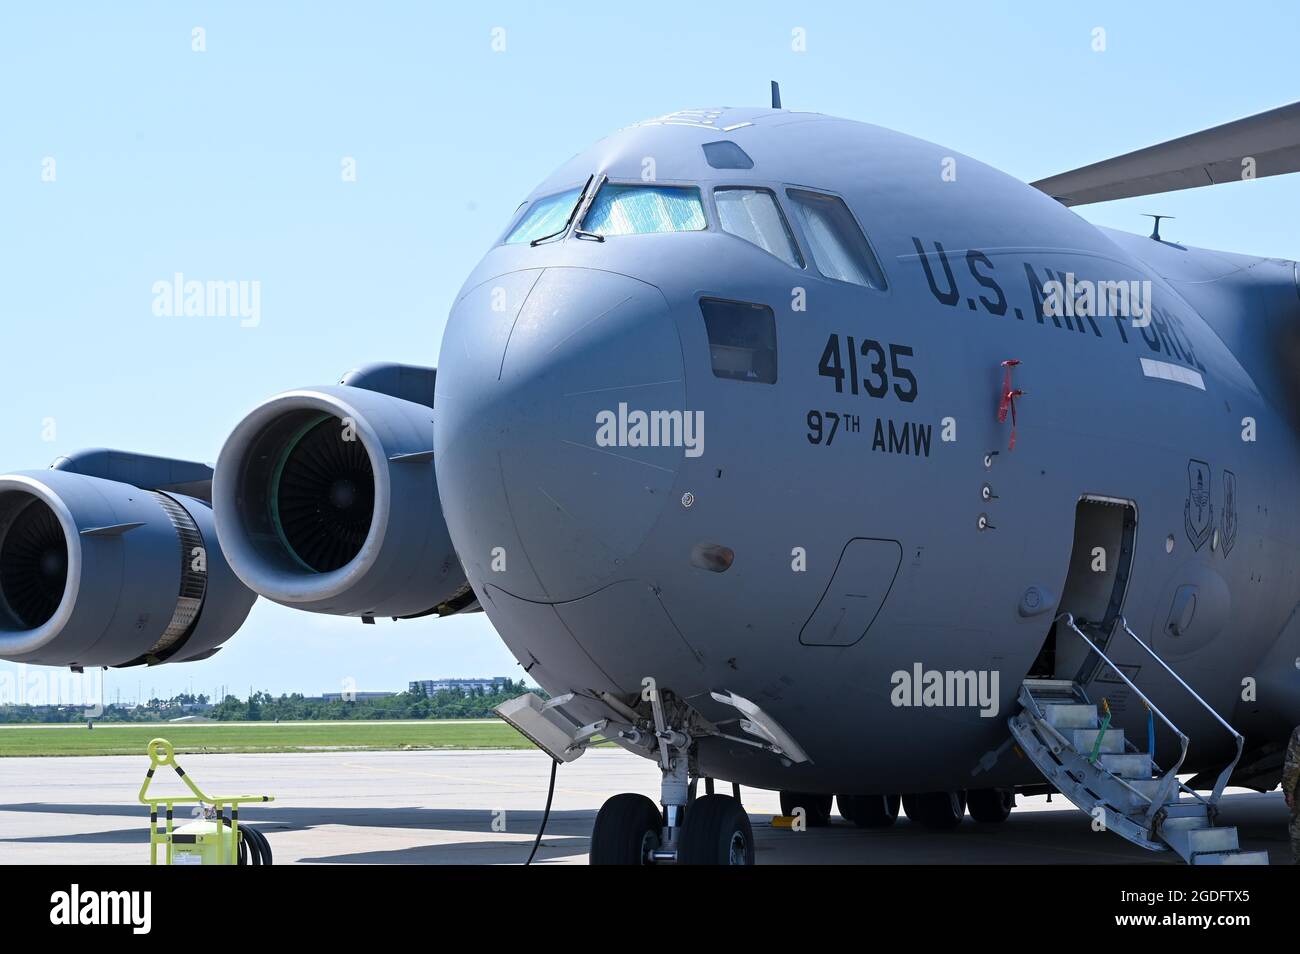 Veintiún porteadores aéreos de la Reserva, a veces llamados “dawgs portuarios”, del Escuadrón Aéreo del Puerto de 72nd, llevan a cabo un entrenamiento digno de transferencia a bordo de un C-17 Globemaster III asignado al Escuadrón de Entrenamiento de Movilidad Aérea de 730th en Altus AFB, Oklahoma, el 8 de agosto de 2021, en la Base de la Fuerza Aérea de Tinker, Oklahoma. El APS 72nd y el AMTS 730th, una unidad geográficamente separada del Ala de Reabastecimiento Aéreo 507th, se asociaron para la capacitación a fin de mantener los requisitos de preparación necesarios para gestionar y mover toda la carga y pasajeros en el sistema de transporte aéreo militar. (EE.UU Foto de la Fuerza Aérea de Tech. SGT. Lauren Kelly) Foto de stock